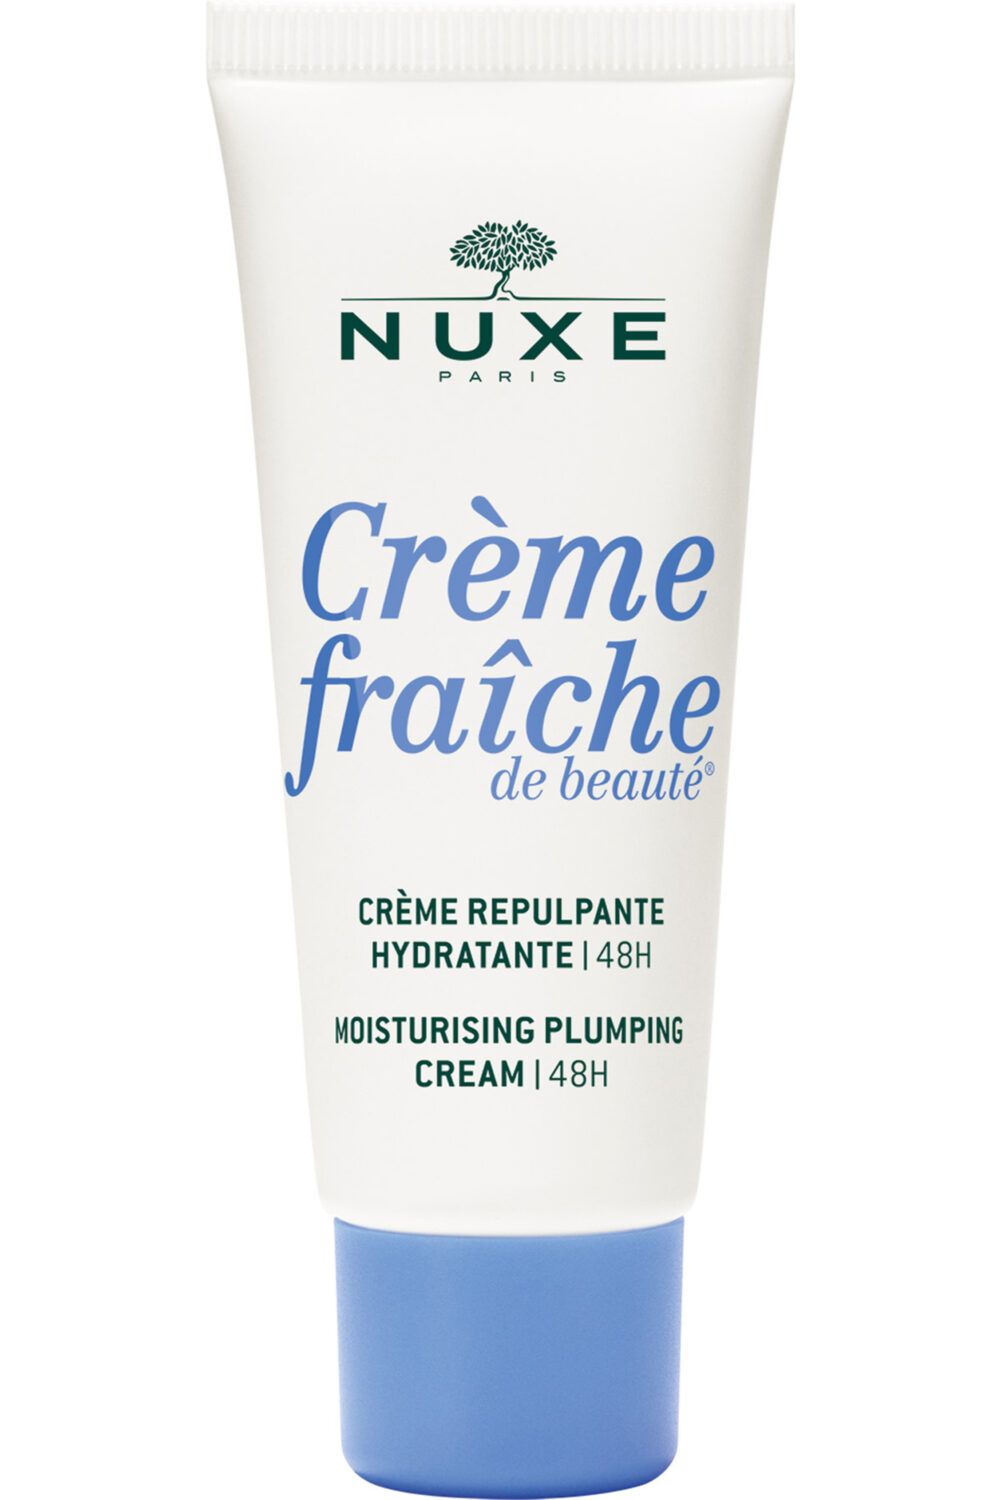 Nuxe - Crème repulpante hydratante 48h Crème fraîche de beauté 30ml